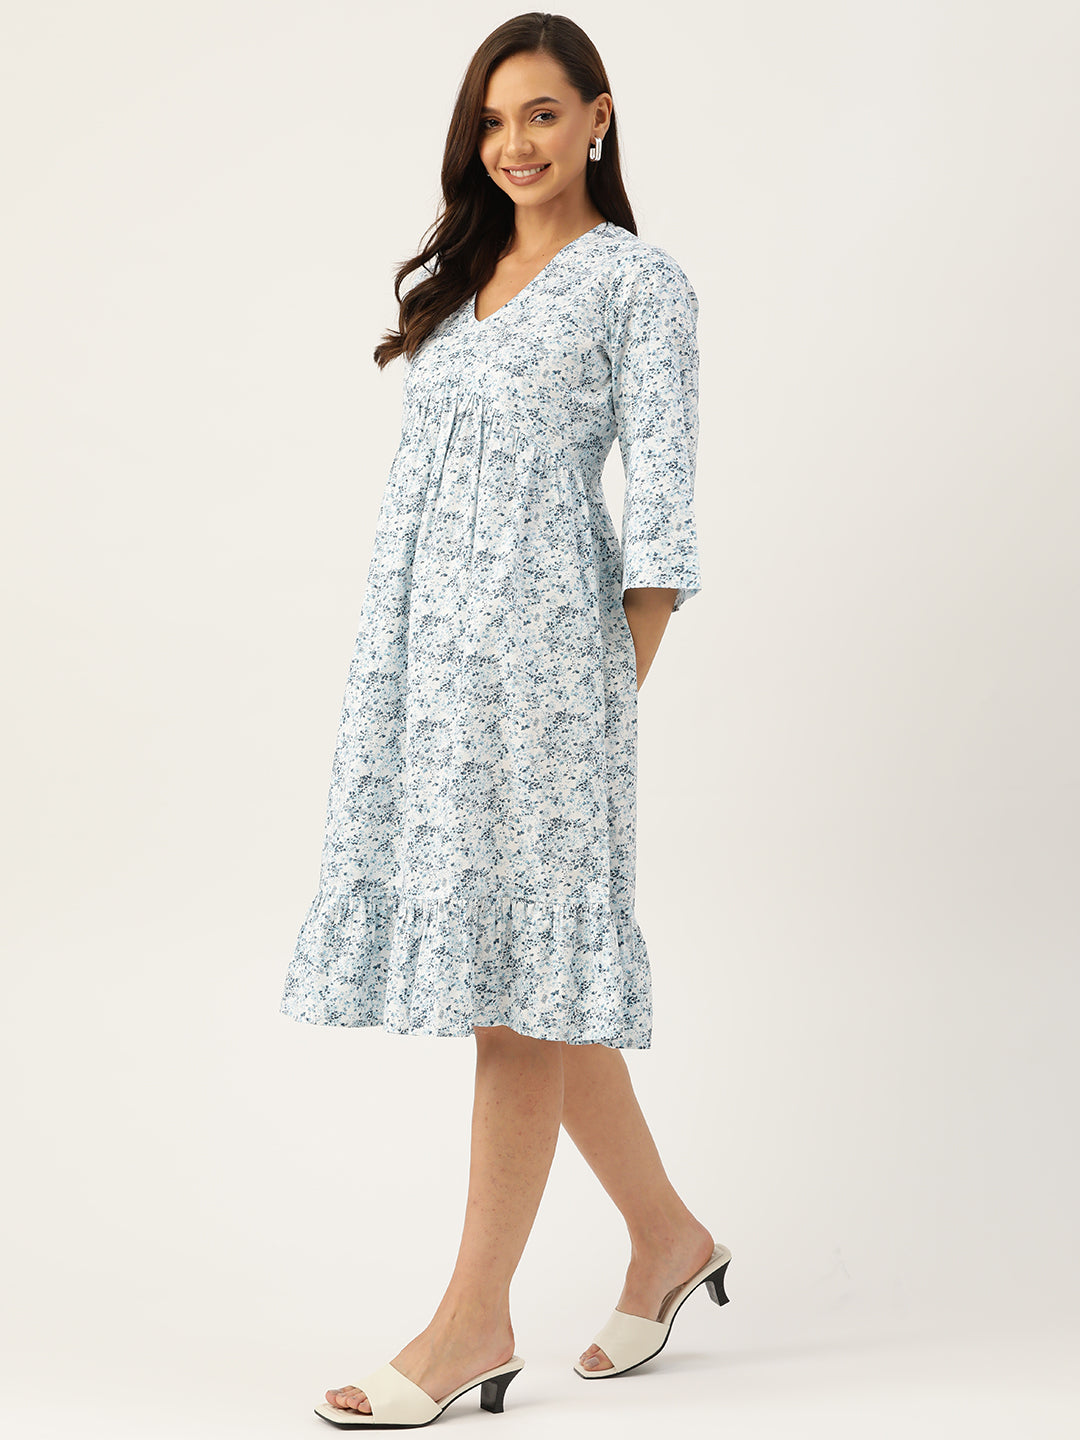 White & Blue Floral Cotton A-Line Dress